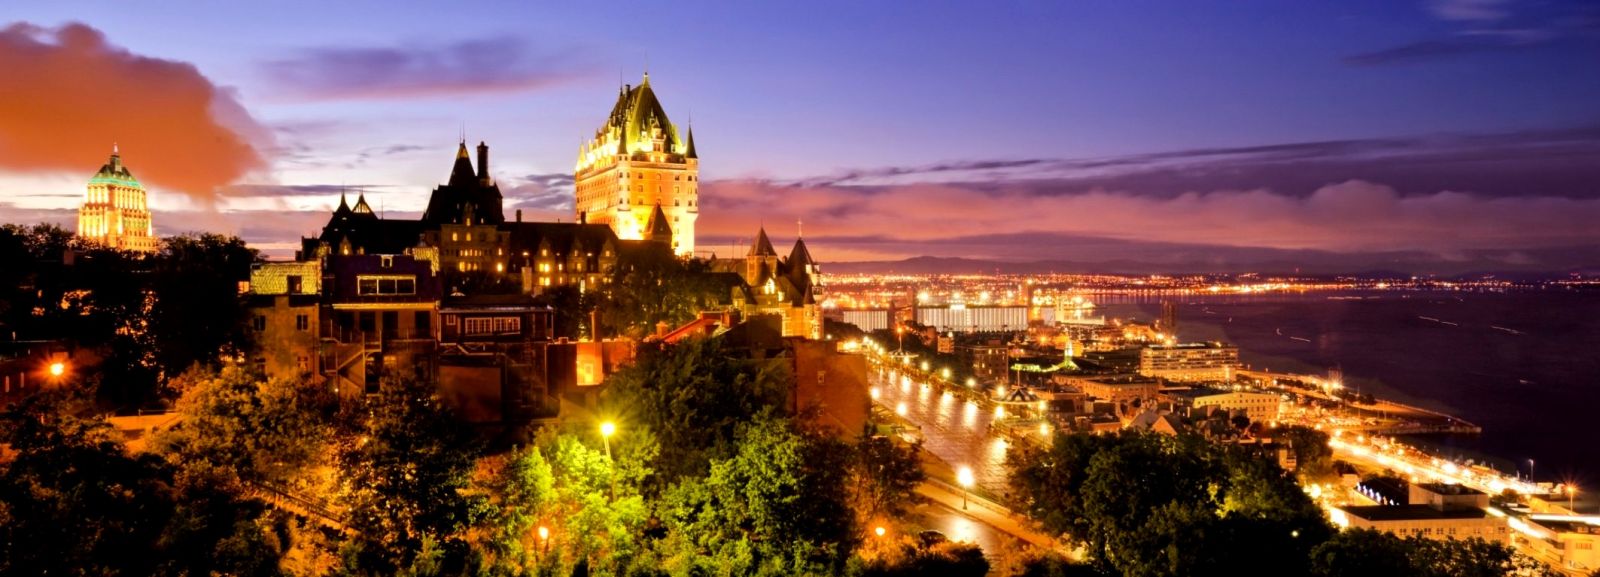 3- La bella, histórica y romántica ciudad de Quebec 